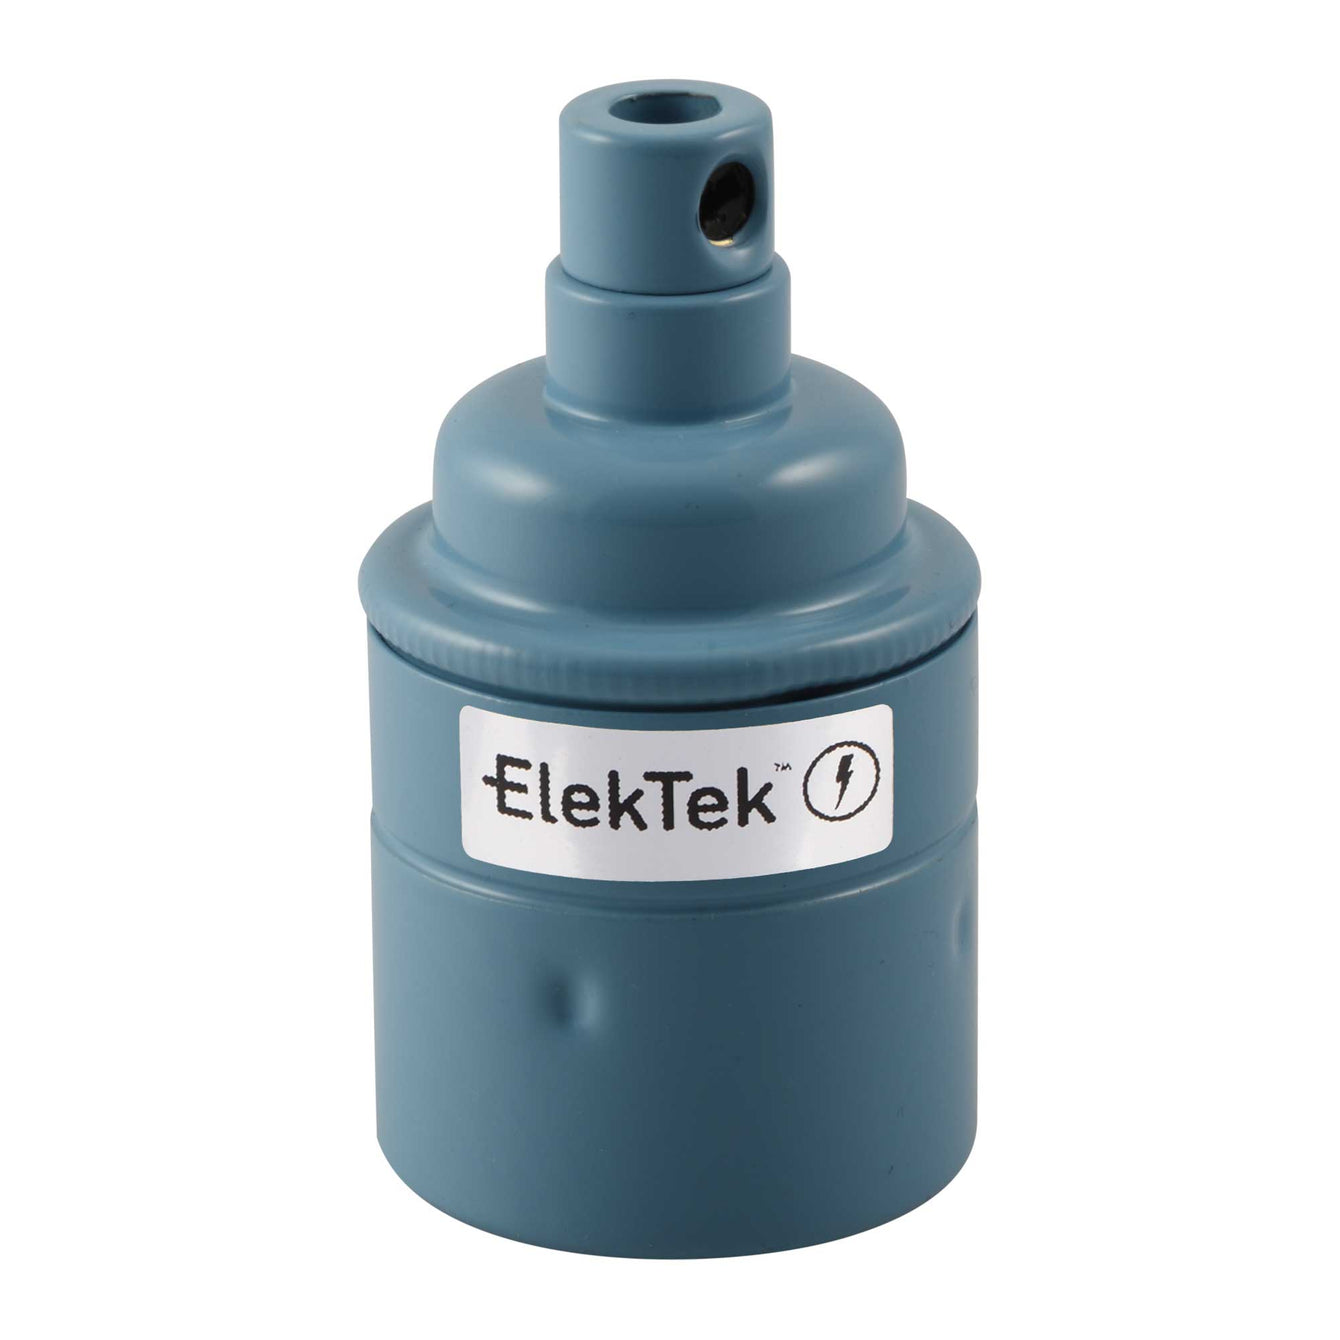 ElekTek ES Edison Screw E27 Lamp Bulb Holder With Cord Grip  Plain Skirt Powder Coated Colours Solid Brass - Buy It Better Brilliant White